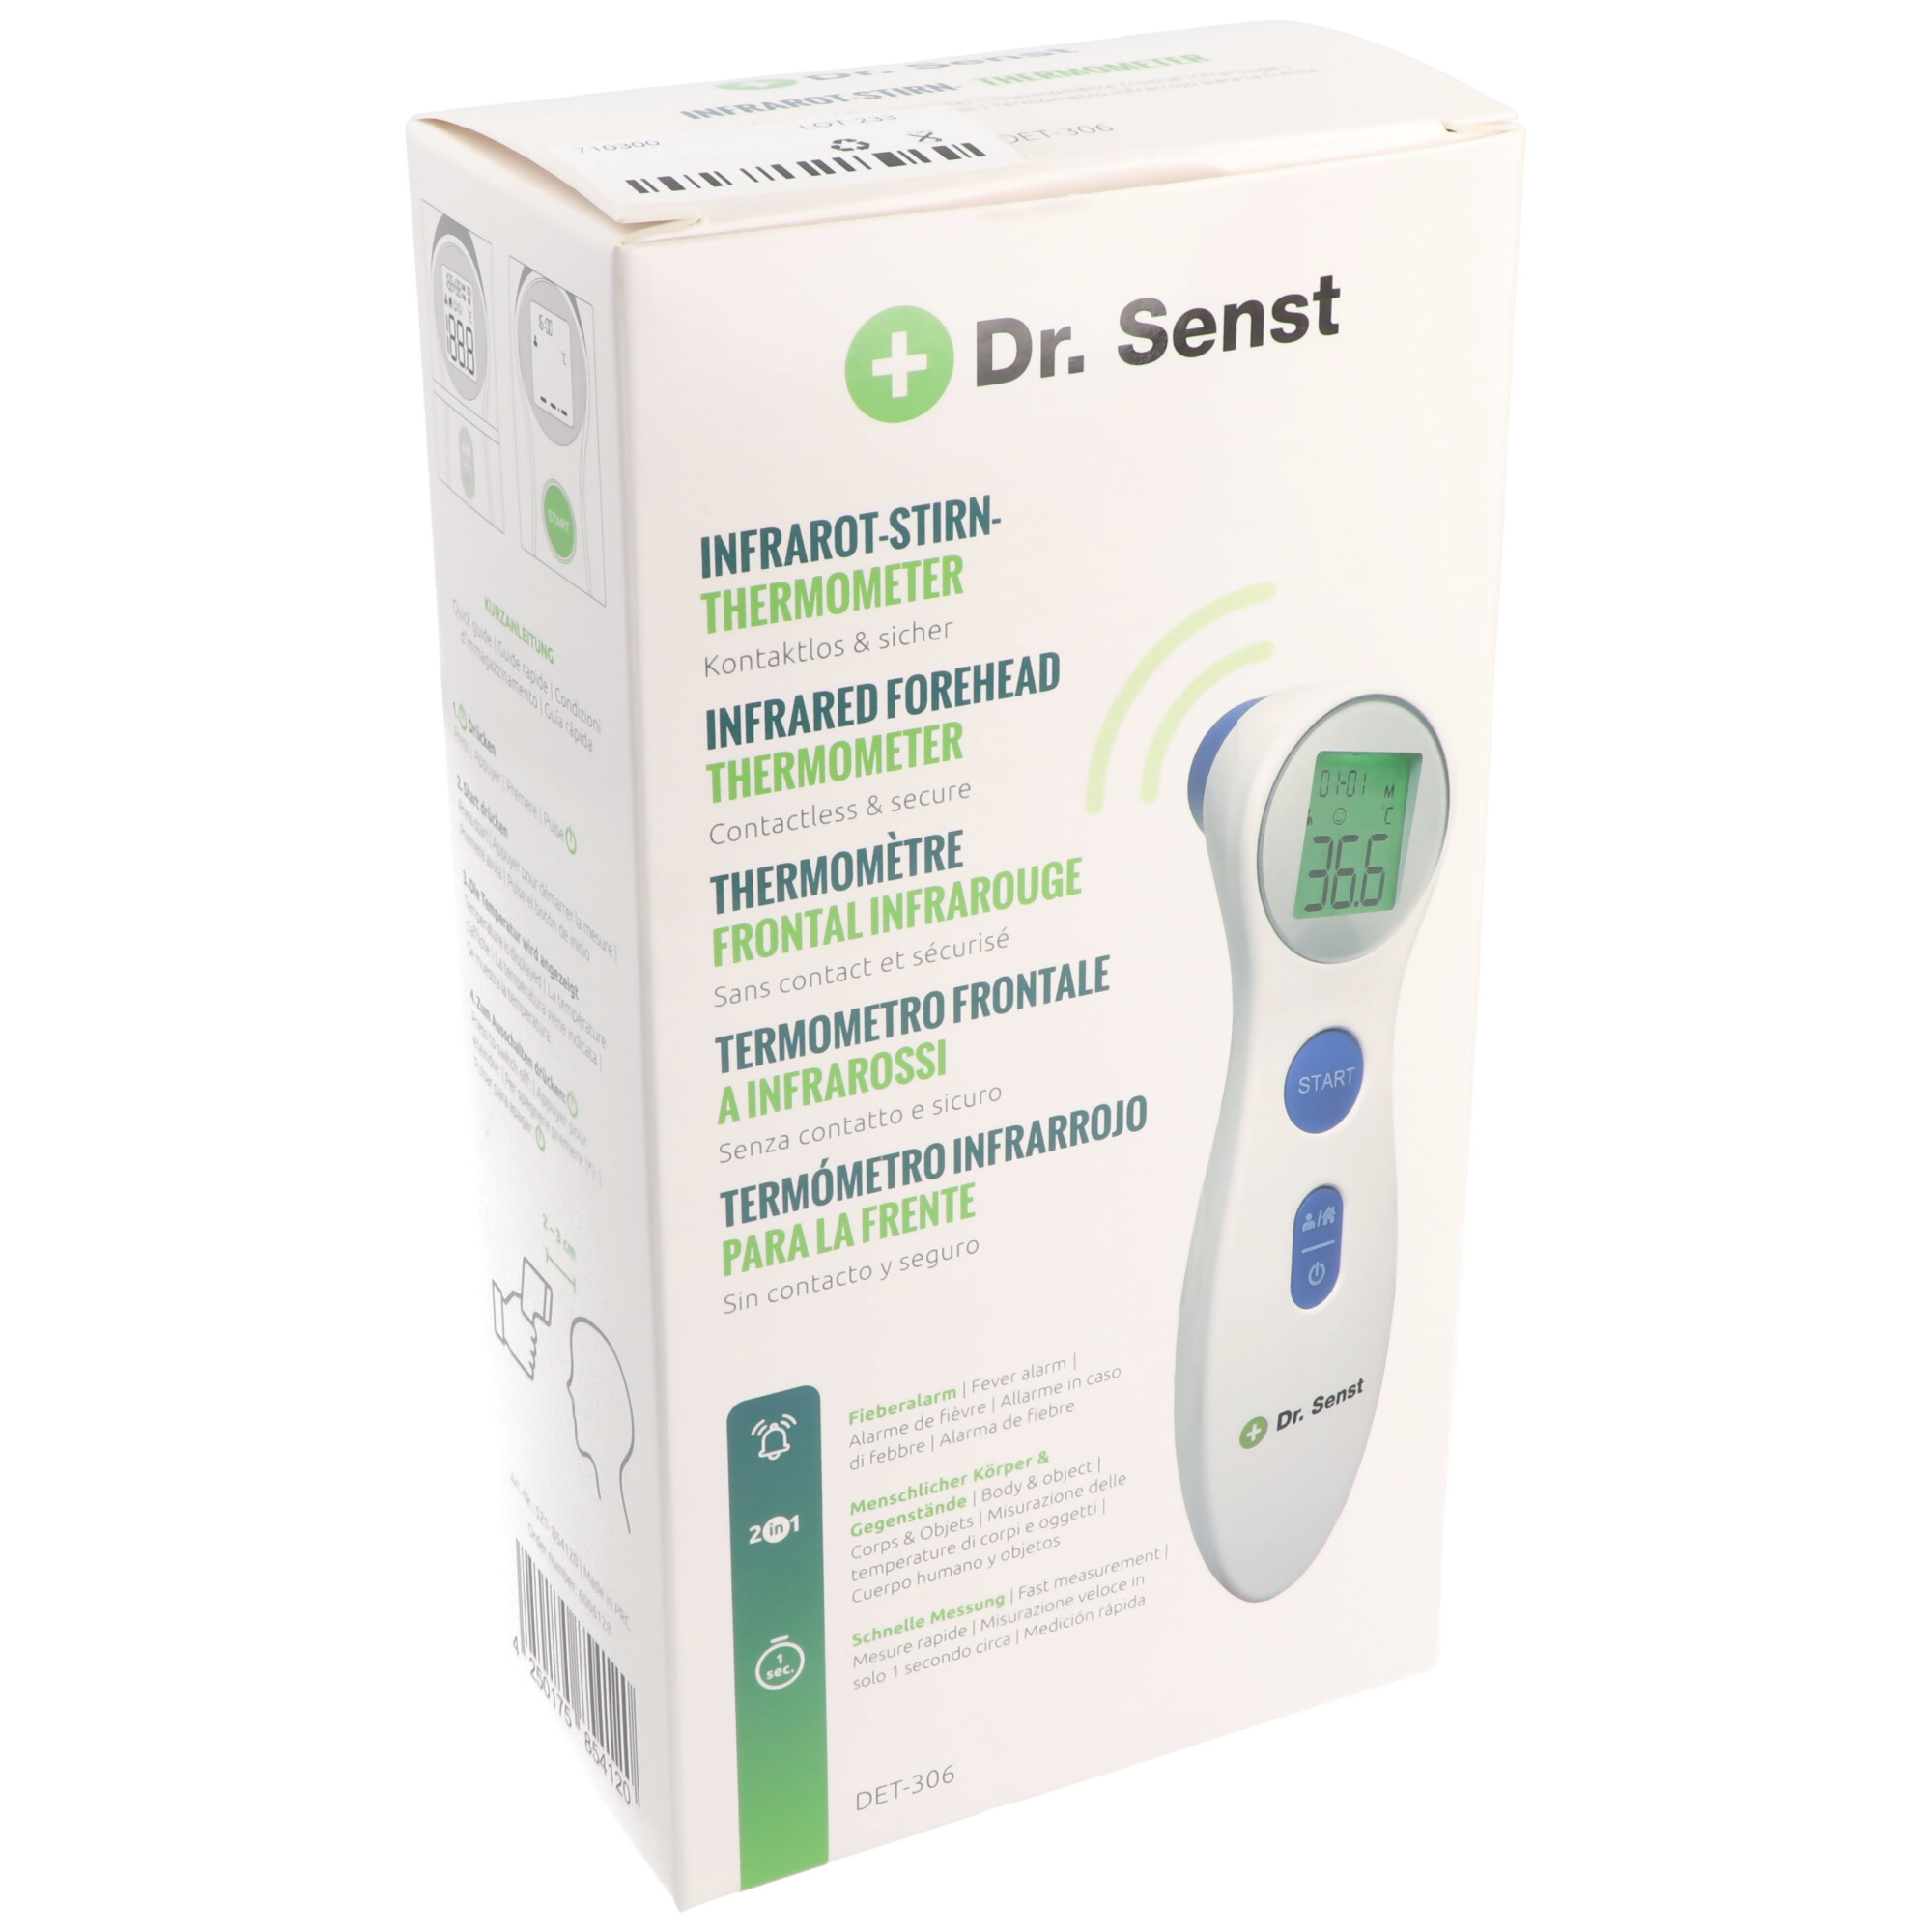 Dr. Senst® Infrarot Stirn-Thermometer DET-306 kontaktlos & sicher |  AKP-710300